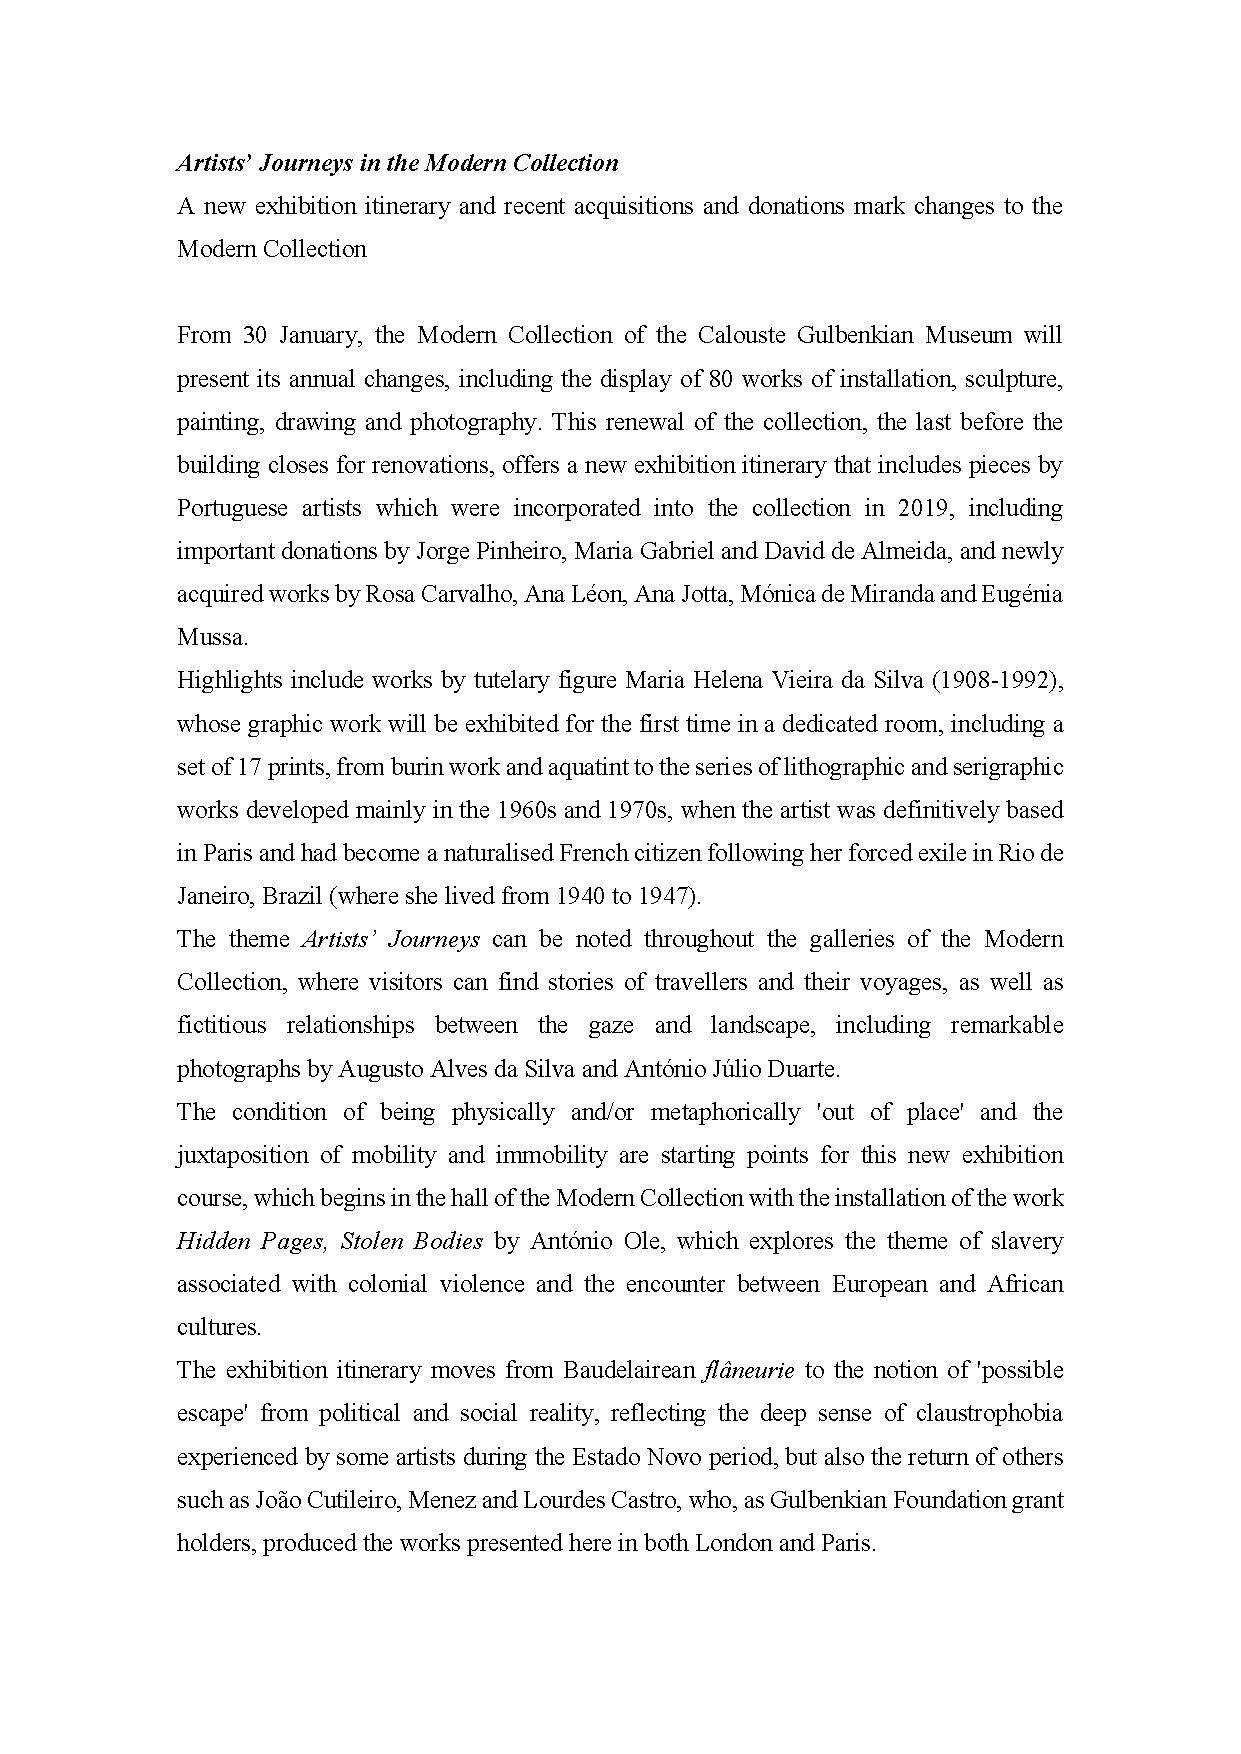 Museu Calouste Gulbenkian – Coleção Moderna / Fundação Calouste Gulbenkian